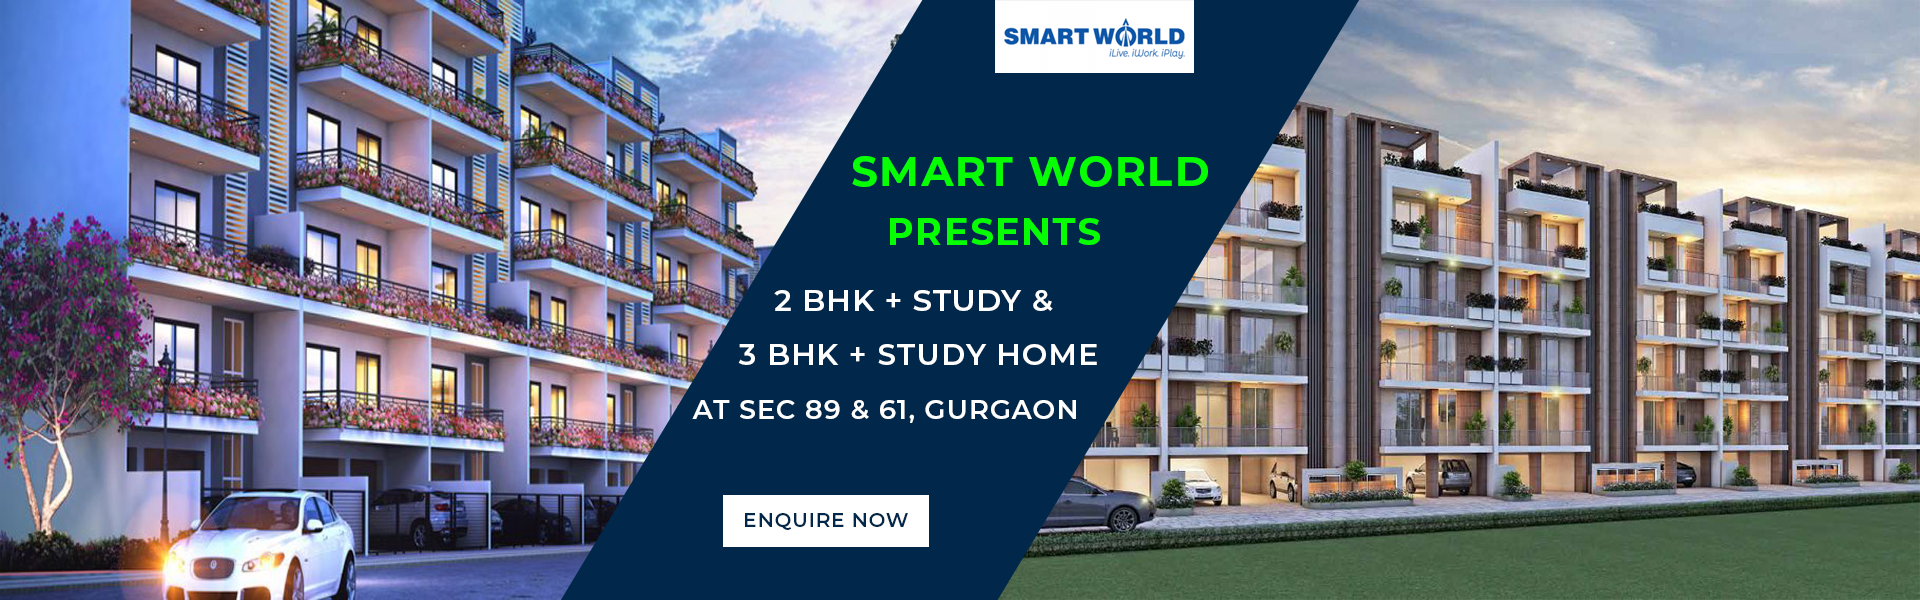 Smart World Sector 89 & 61